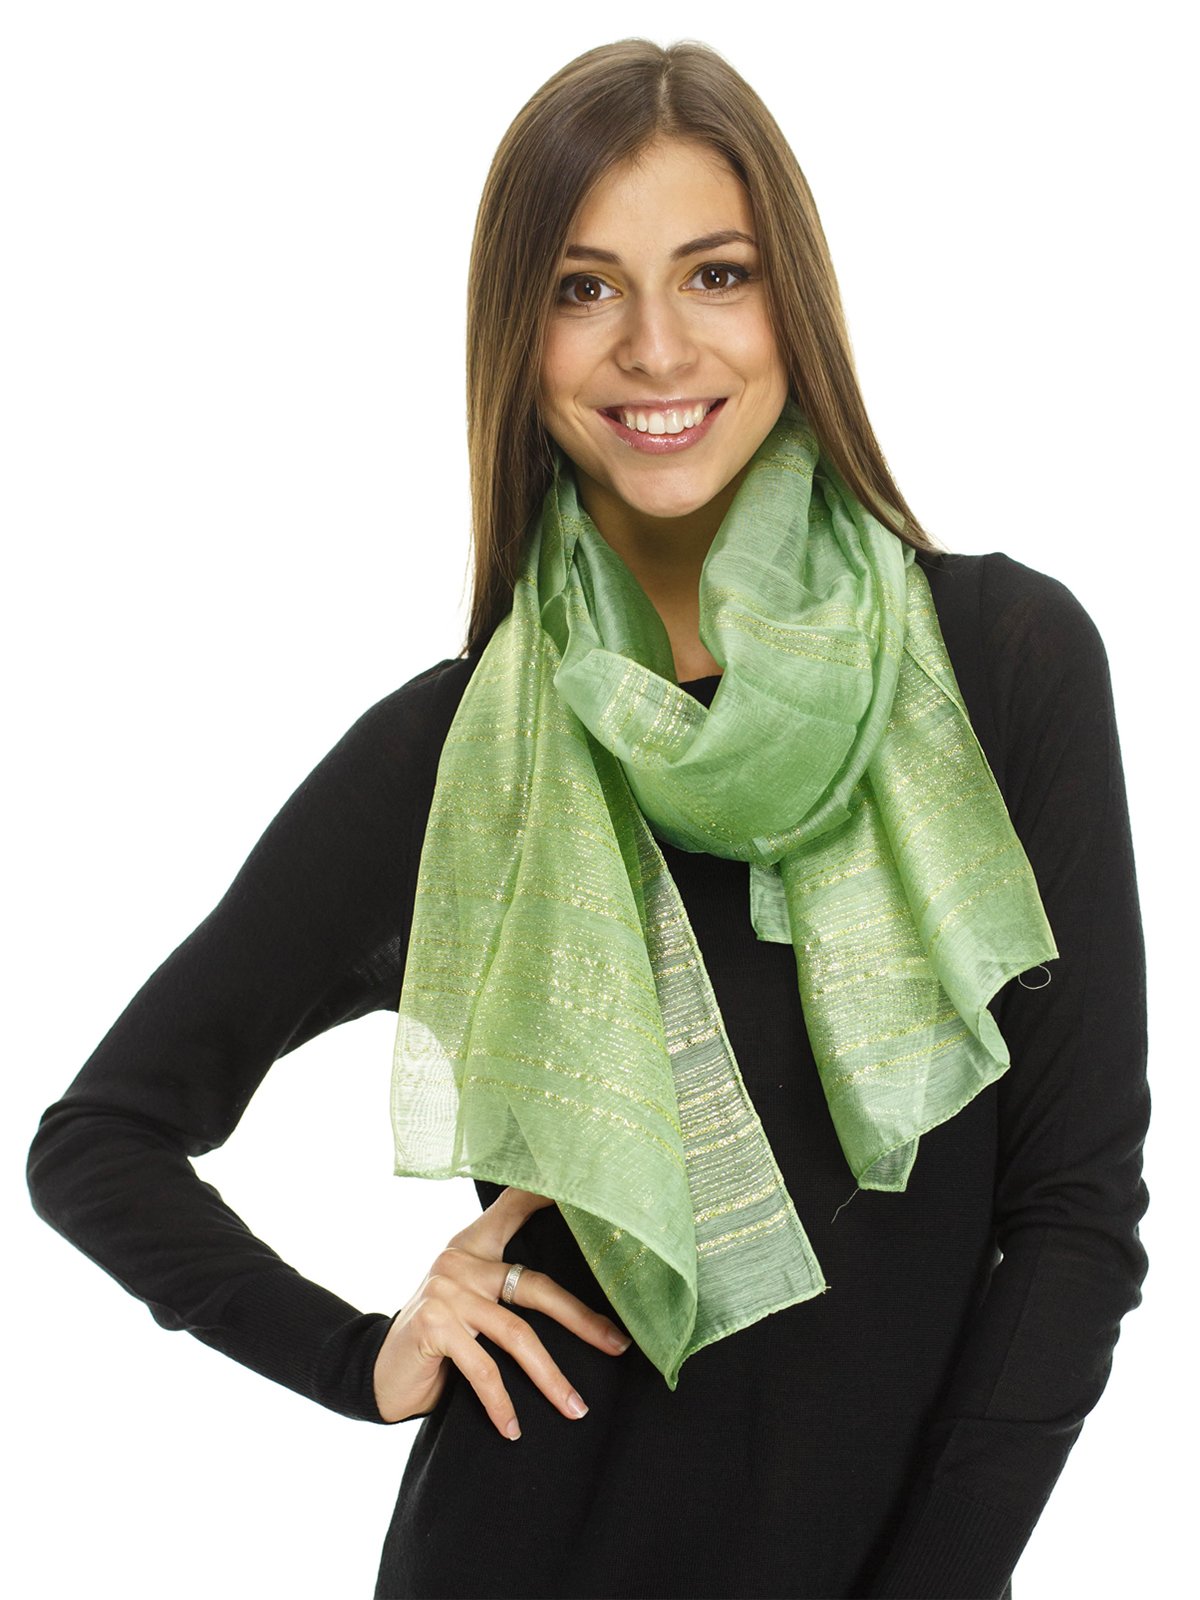 Зеленый шарф сочетание